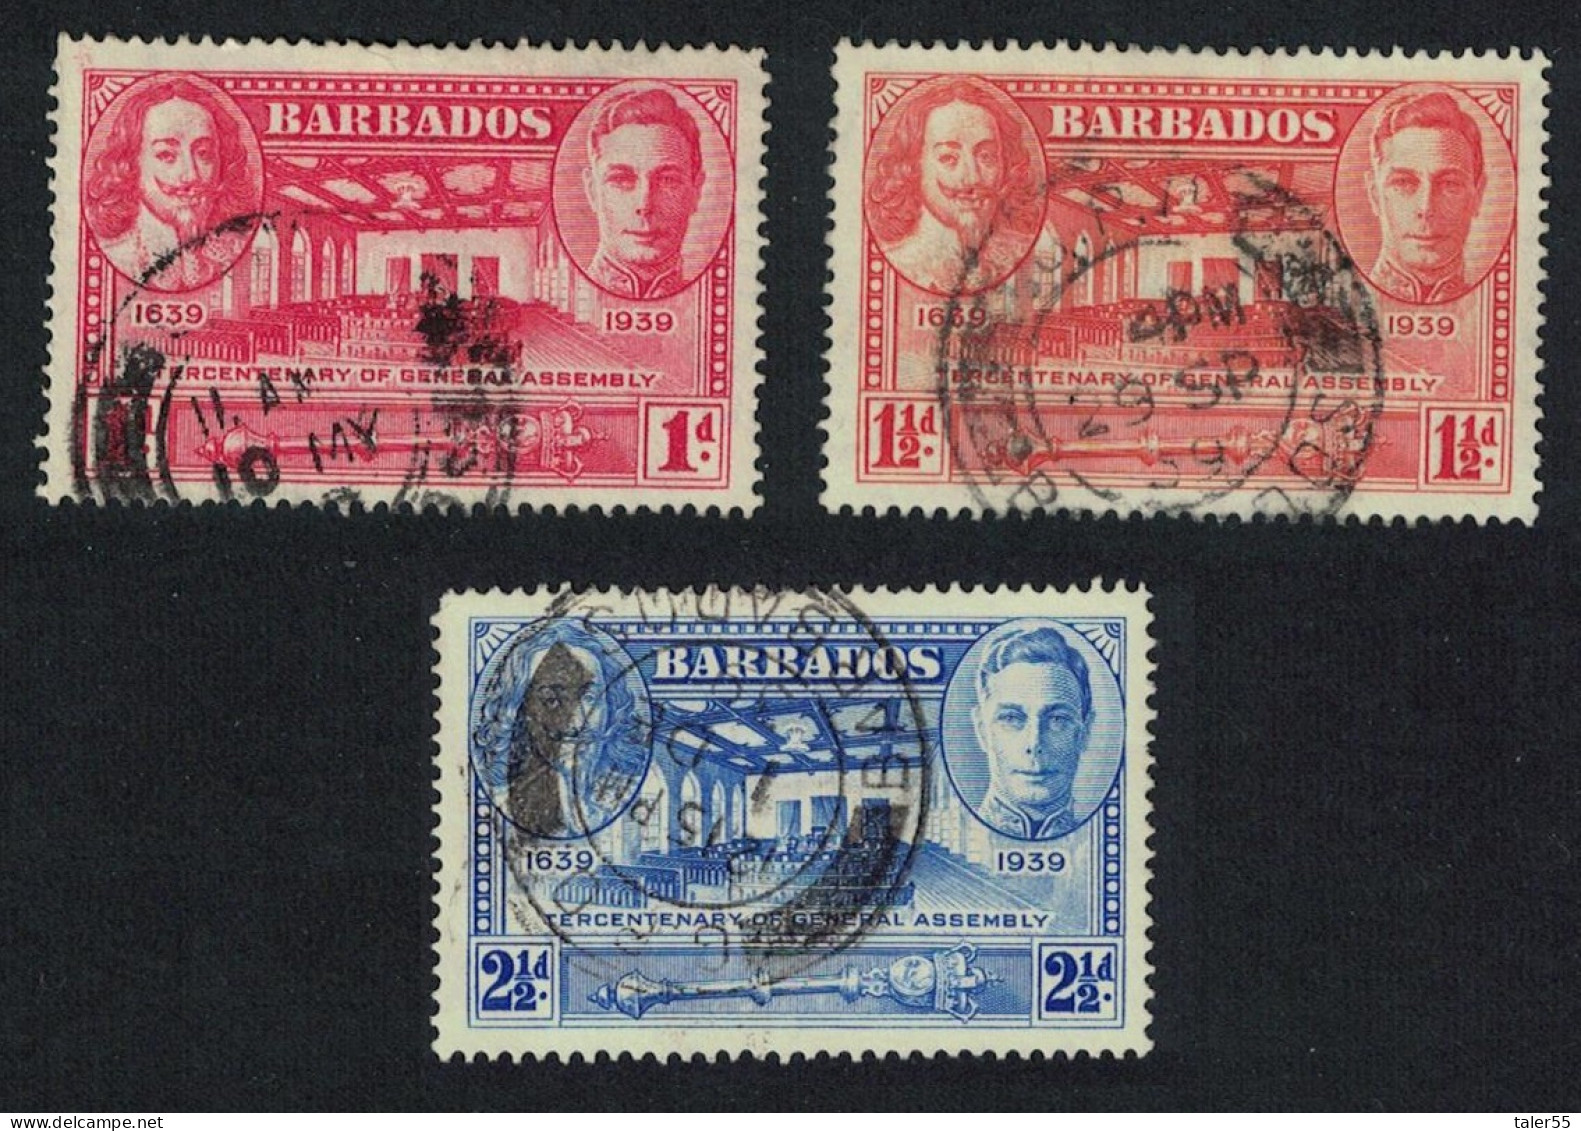 Barbados Tercentenary Of General Assembly 3v 1939 Canc SG#258-260 - Barbados (...-1966)